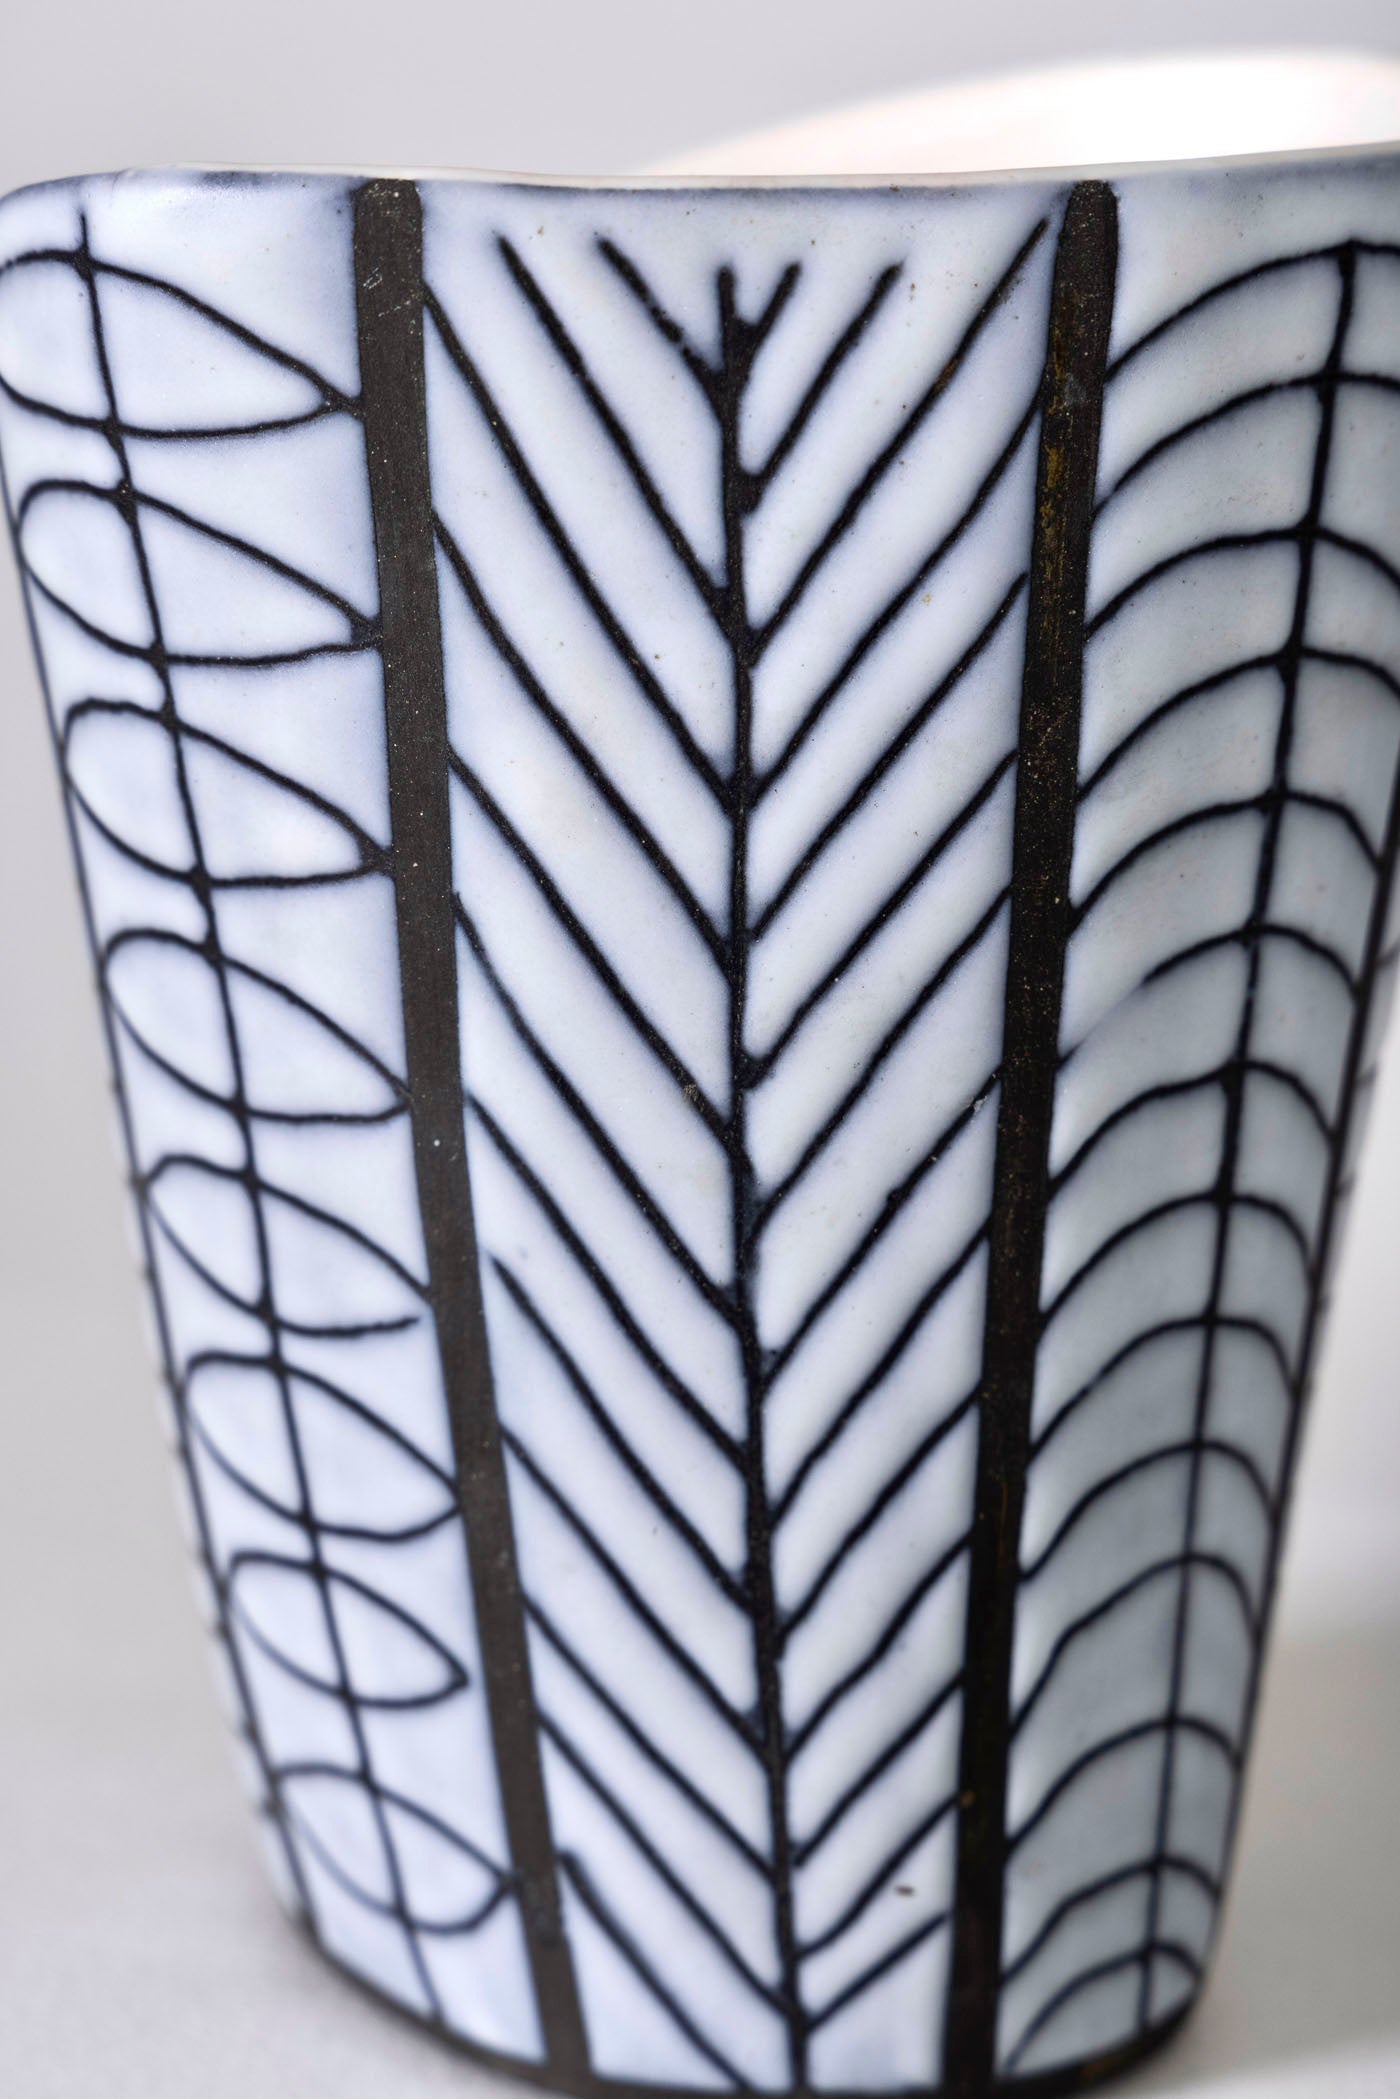 Vase en céramique émaillée du designer Roger Capron (1922-2006) années 1960. Décor en réserve noir et blanc. Ce vase est signé du céramiste Capron sur l'envers. Très bon état.